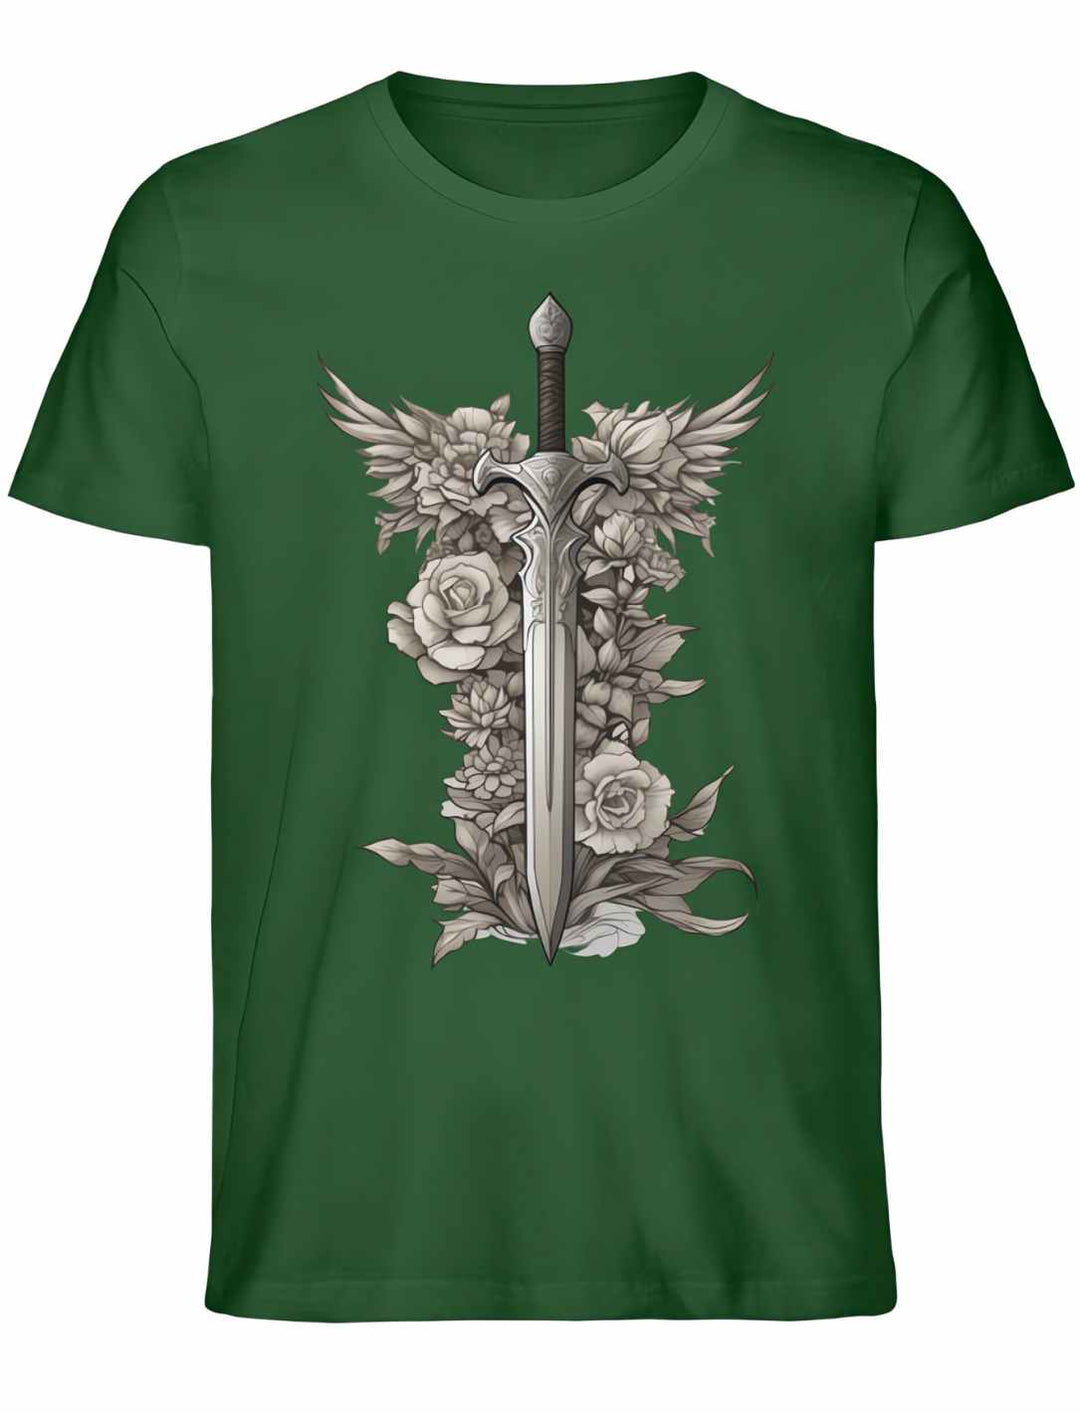 Schwert des Sylvanritters T-Shirt in Dunkelgrün aus Bio-Baumwolle, Unisex-Stil, mit grüner Schwert-Illustration